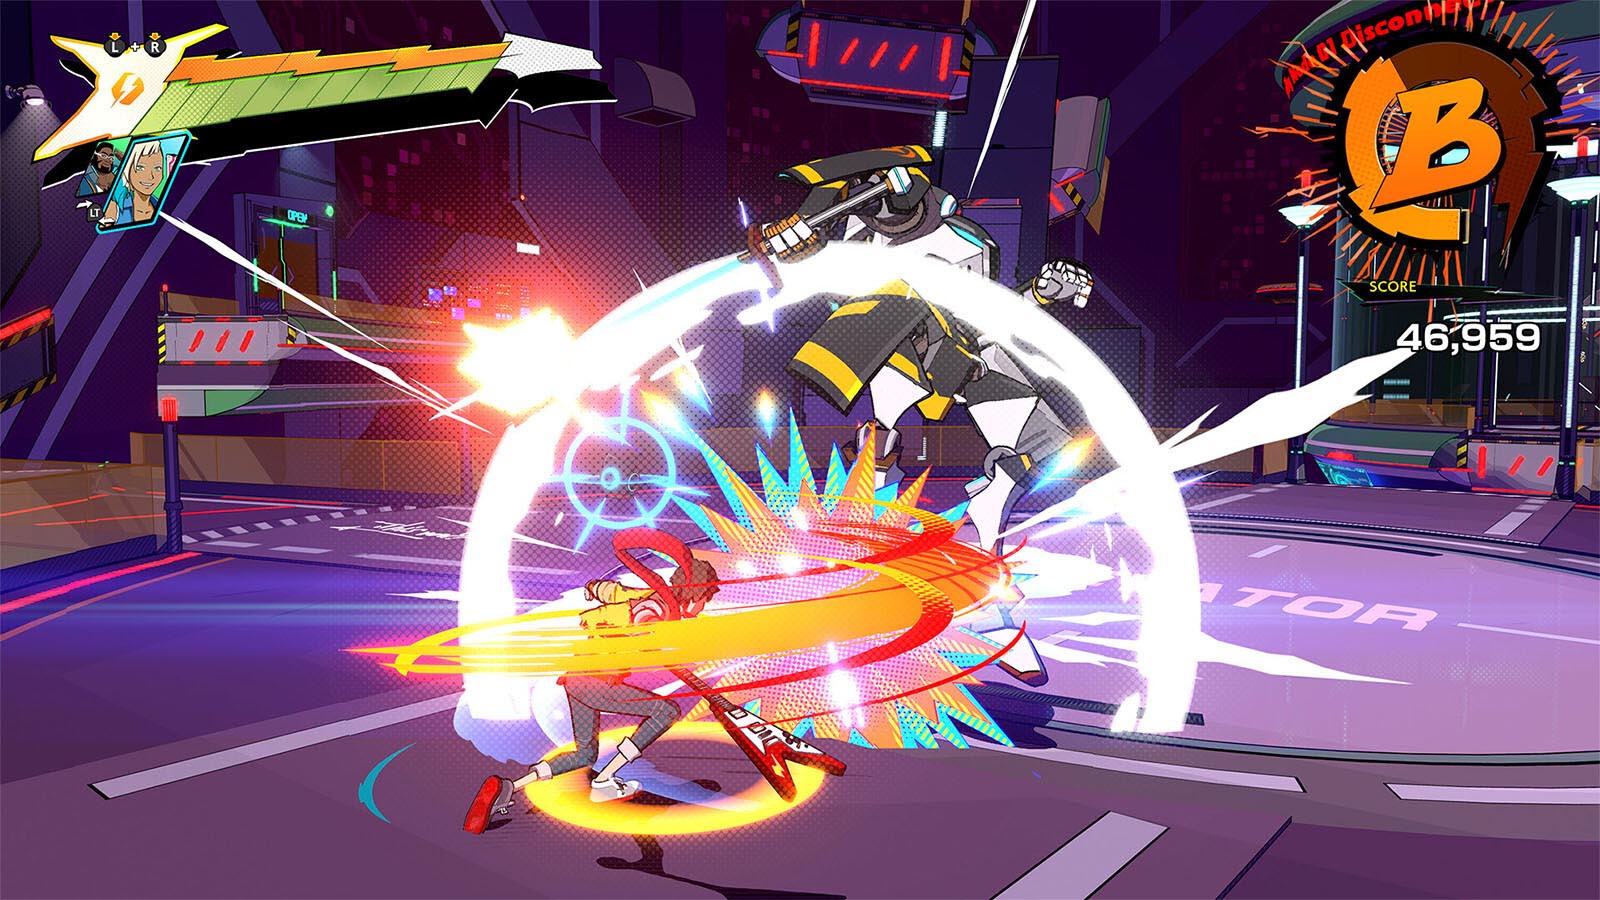 Скриншот из видеоигры, на котором персонаж в ярких цветах бьет гигантского робота электрогитарой